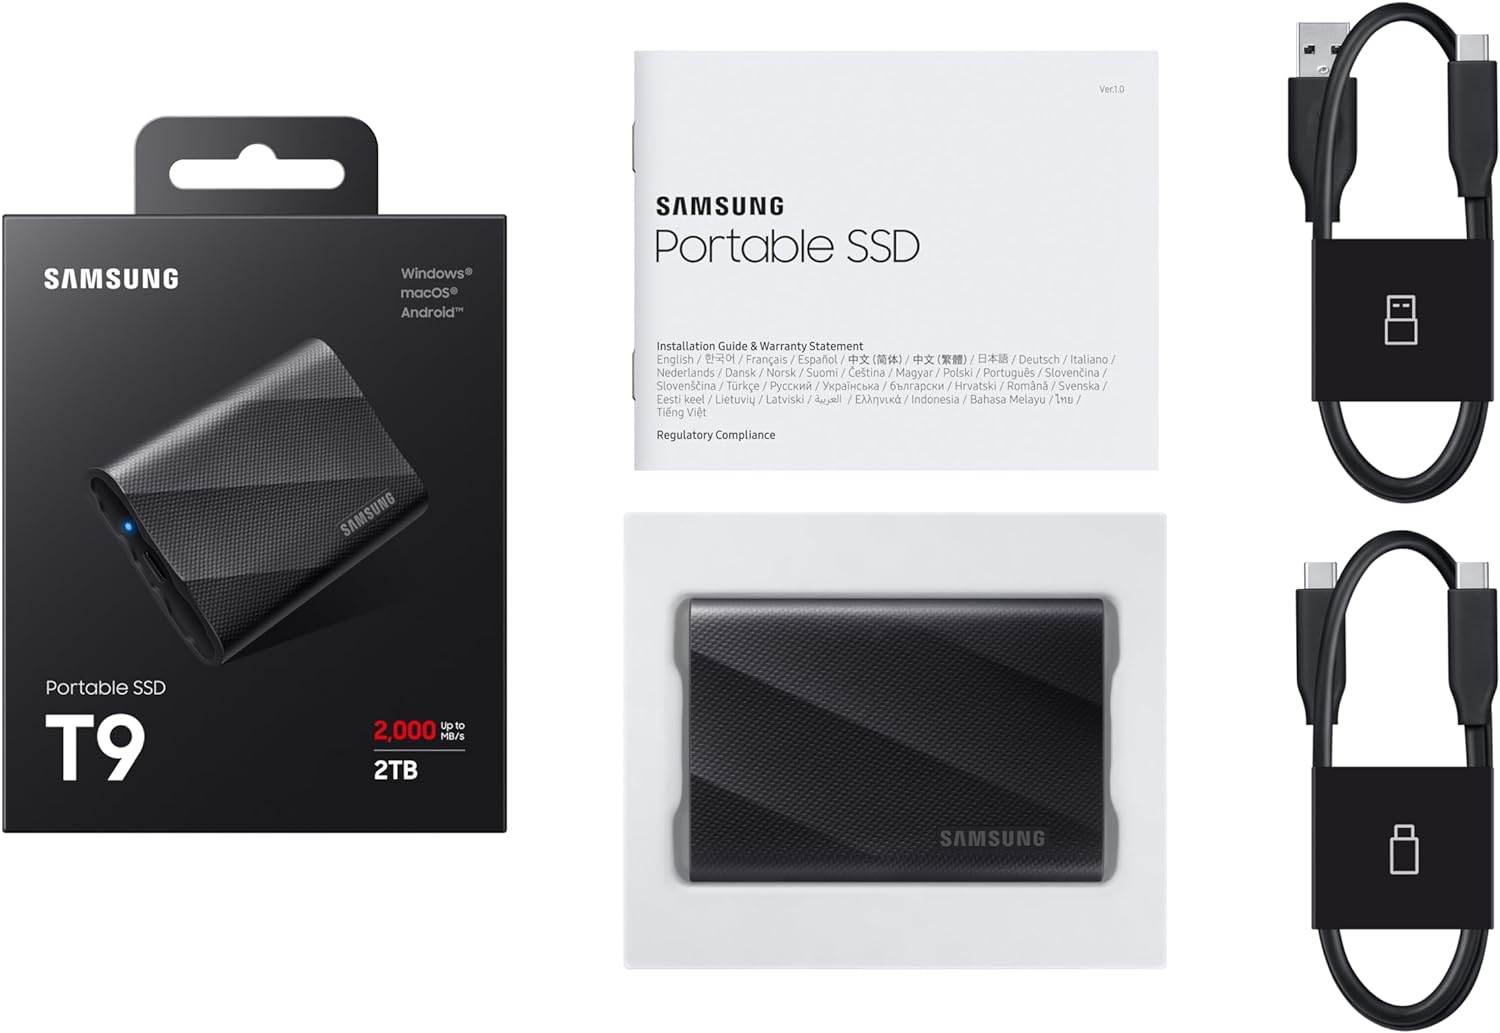 Samsung Portable SSD T9: Inhoud van de verpakking